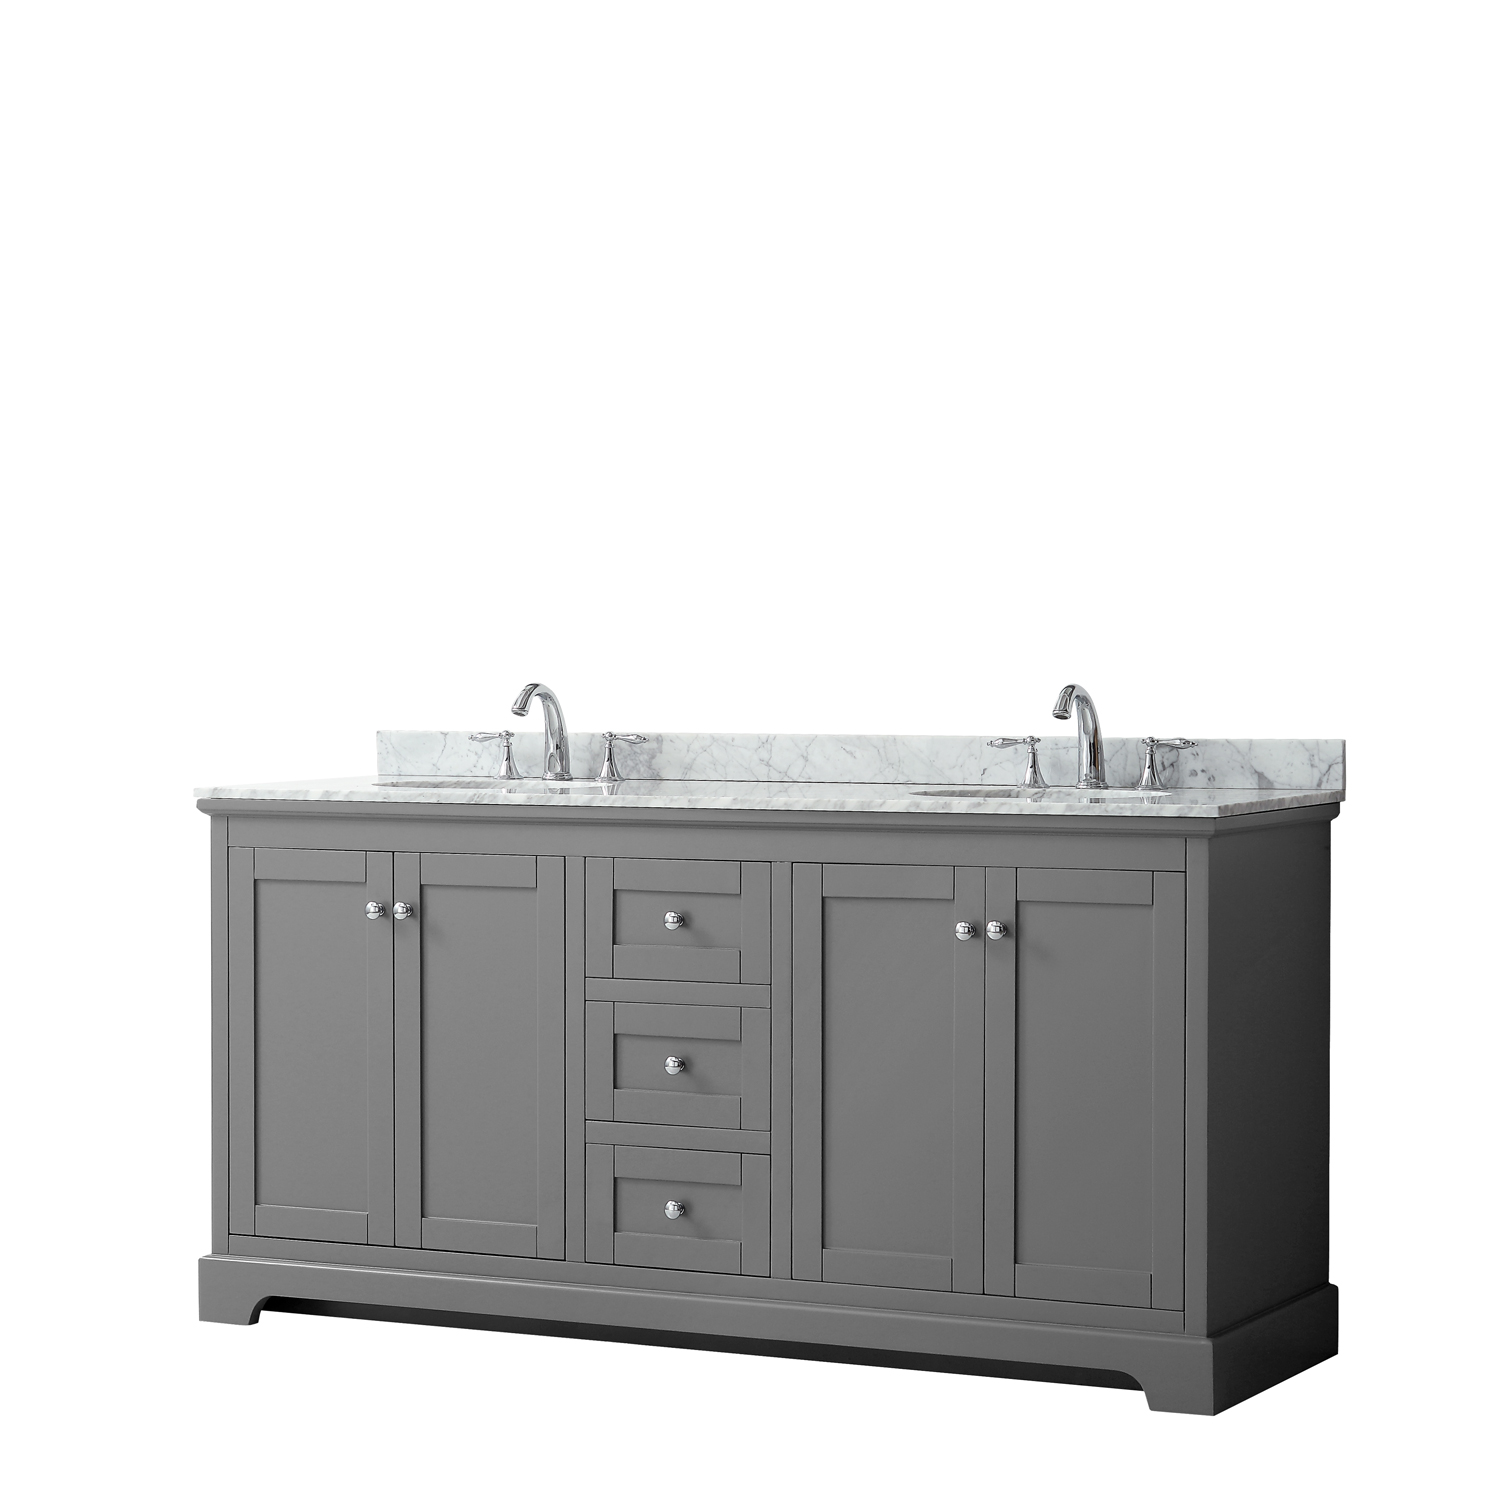 72" Double Bathroom Vanity in Dark Gray, No Countertop, No Sinks, and No Mirror